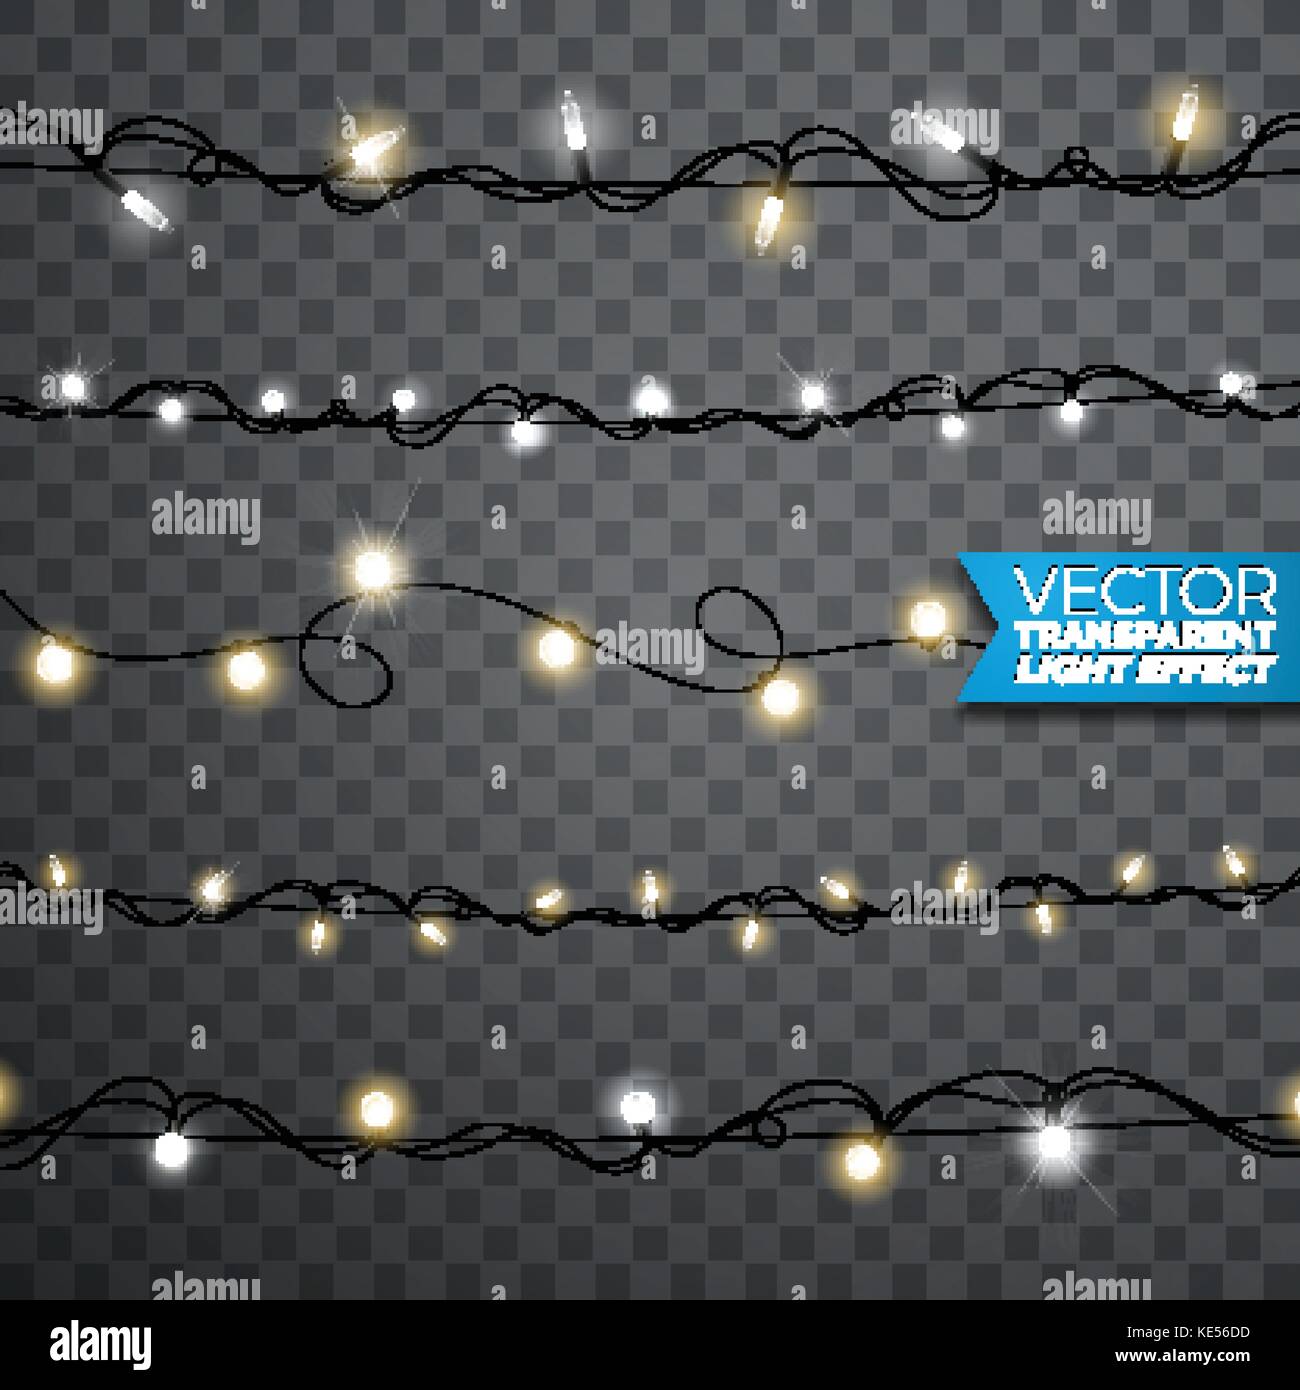 Brillantes luces de Navidad realista diseñar elementos aislados sobre fondo transparente. xmas guirnaldas decoraciones para tarjeta de felicitación. Ilustración del Vector